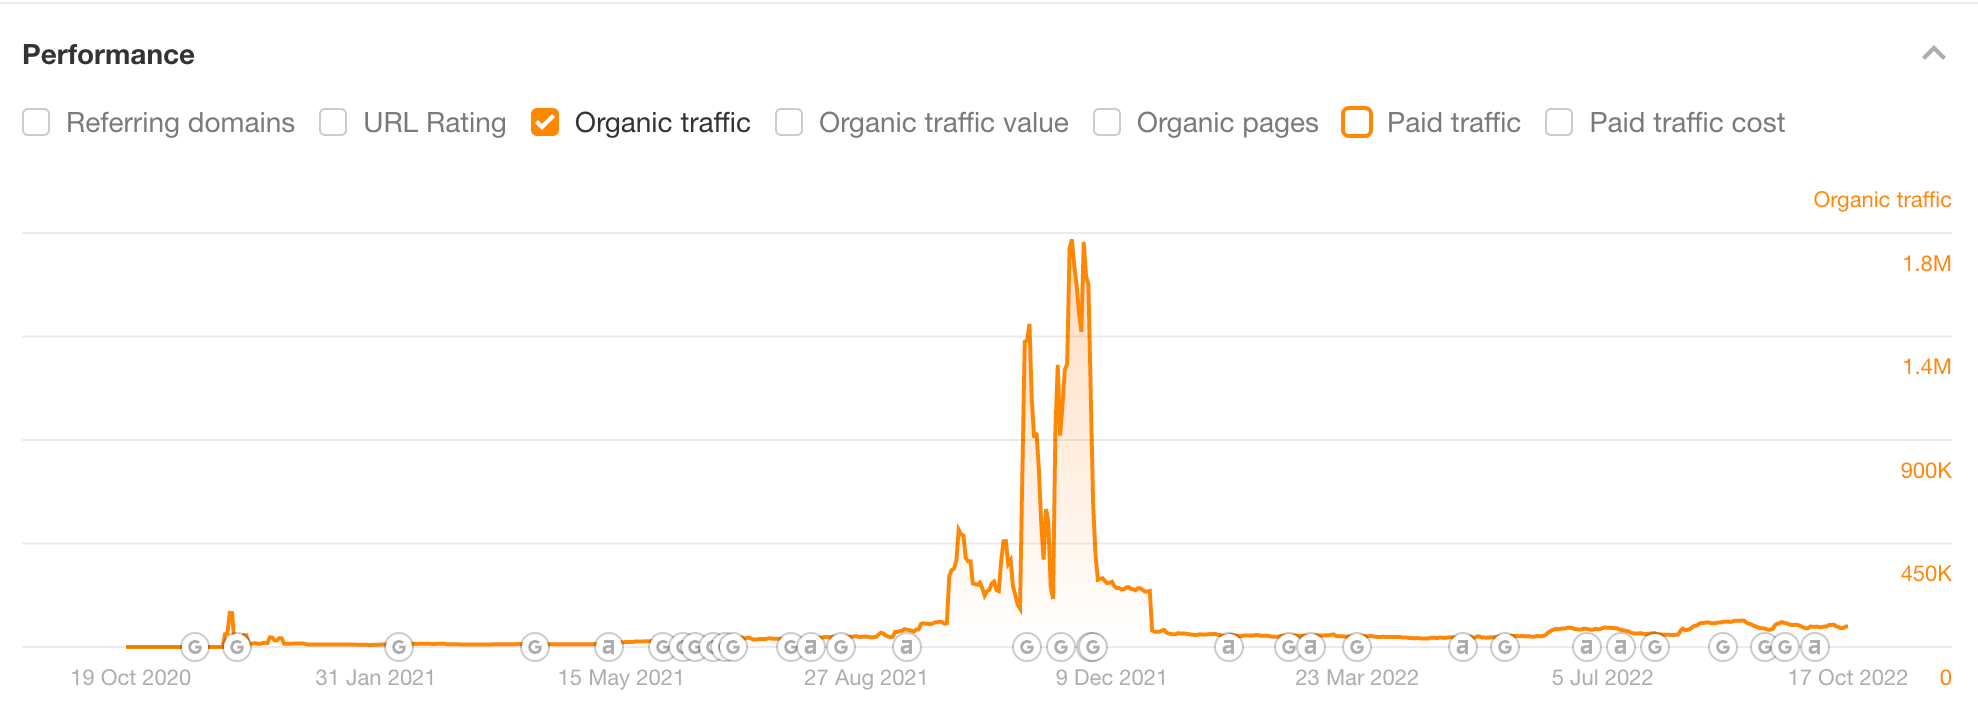 Jumlah lalu lintas organik yang didapat halaman penawaran Black Friday TechRadar, melalui Site Explorer Ahrefs